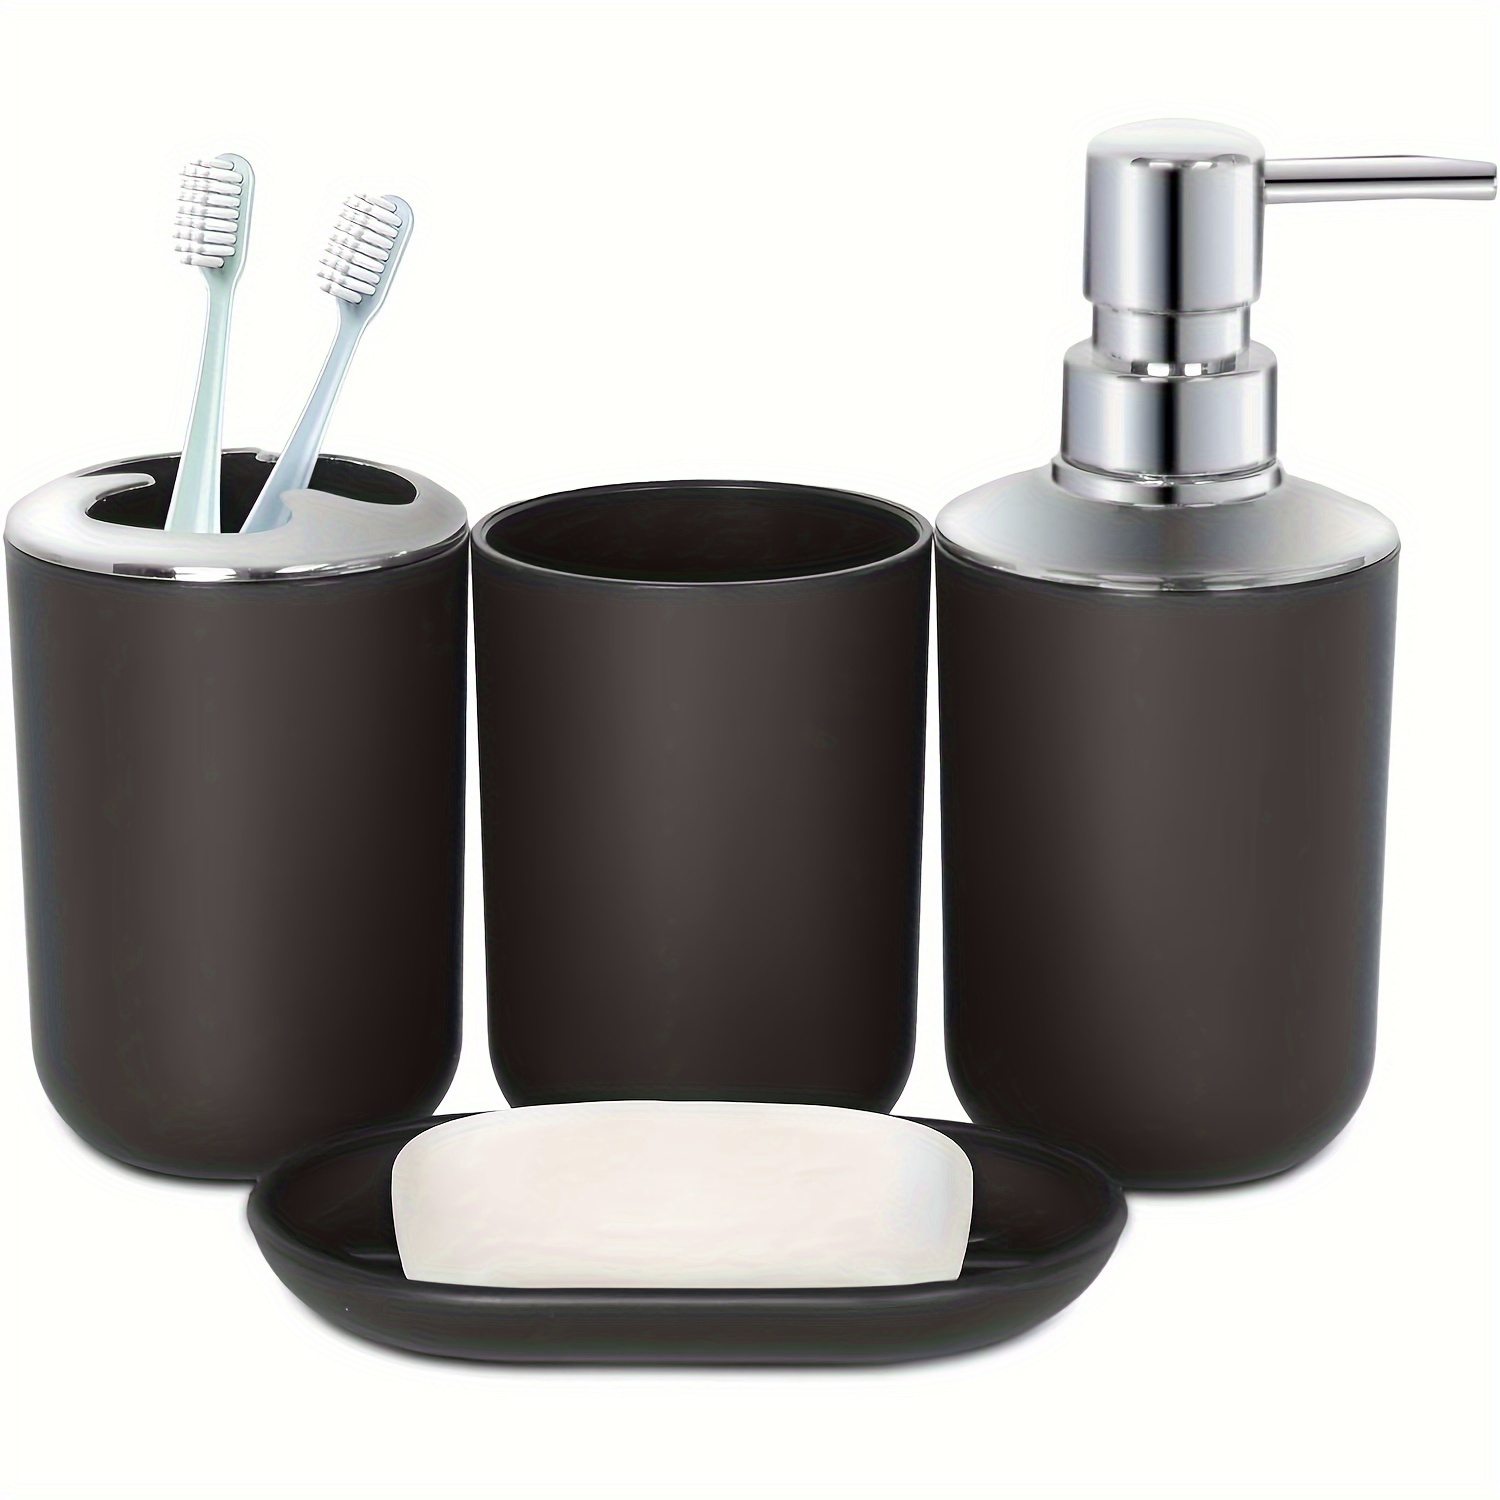  Dispensador de jabón líquido de manos para baño, juego de  accesorios de baño de cerámica de 5 piezas, soporte para cepillo de  dientes, dispensador de jabón líquido, jabonera, 2 vasos, juego